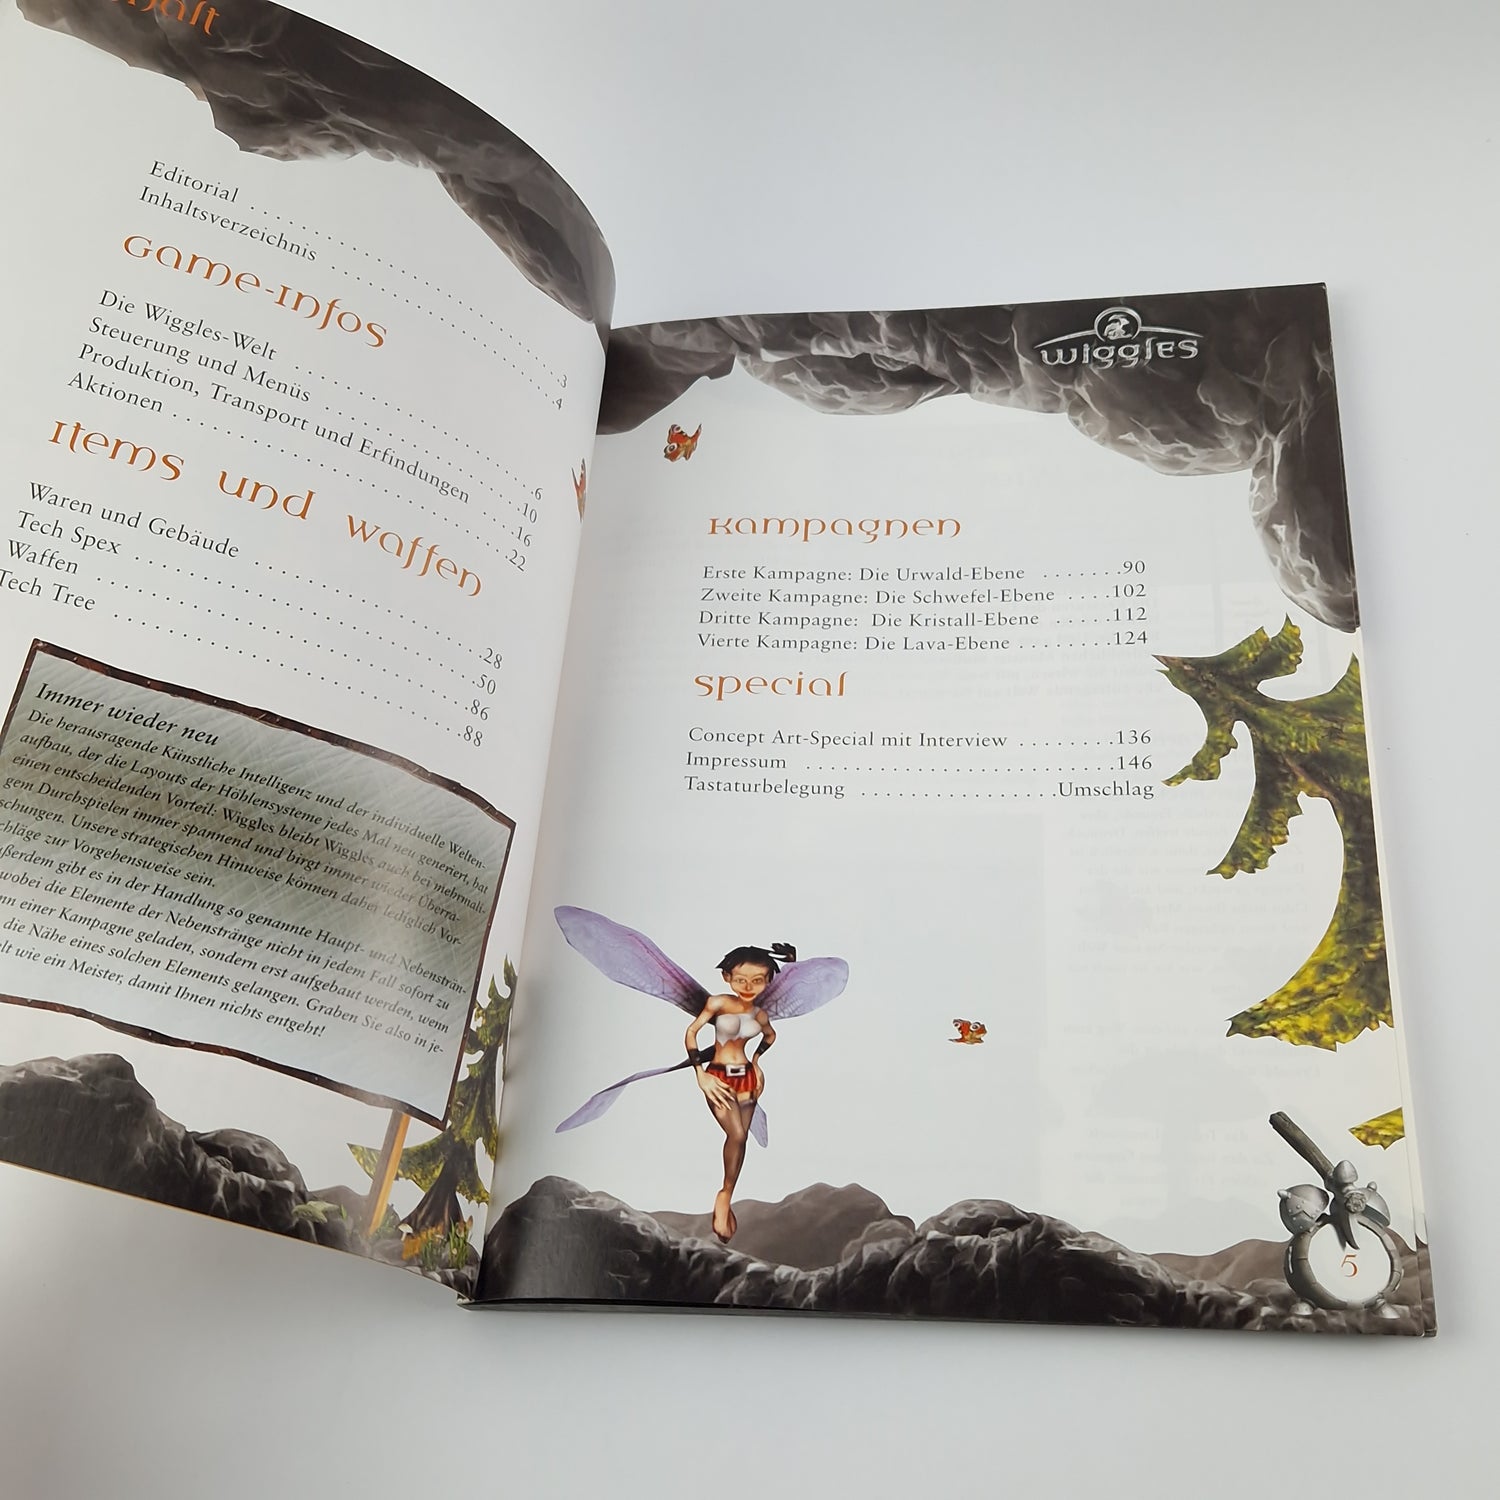 Das offizielle Lösungsbuch zu dem Spiel : Wiggles - PC Spieleberater auf deutsch